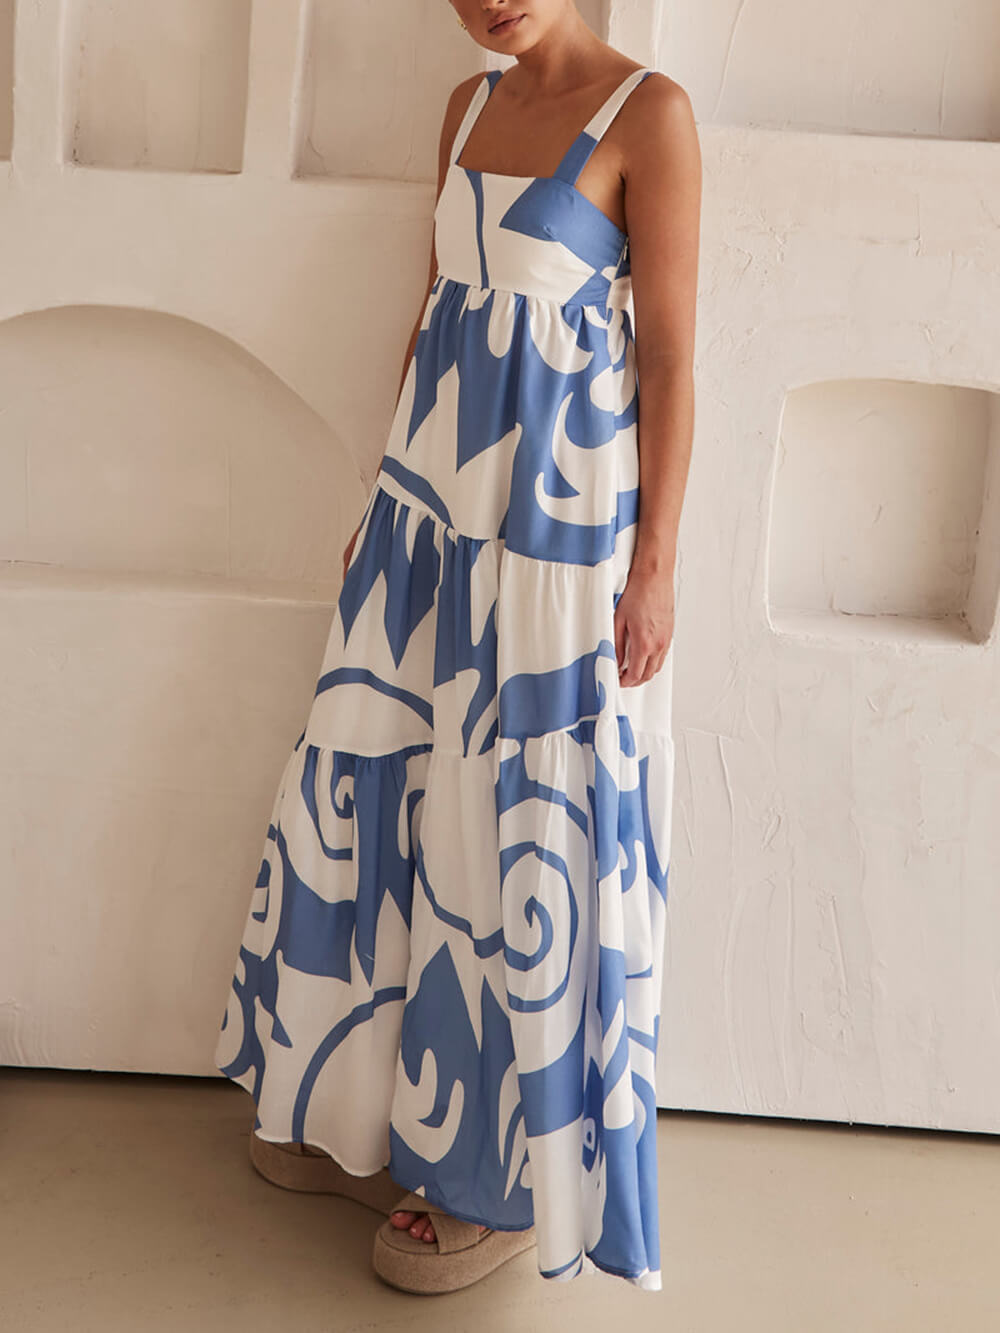 बोहेमियन जियोमेट्रिक प्रिंट मैक्सी ड्रेस